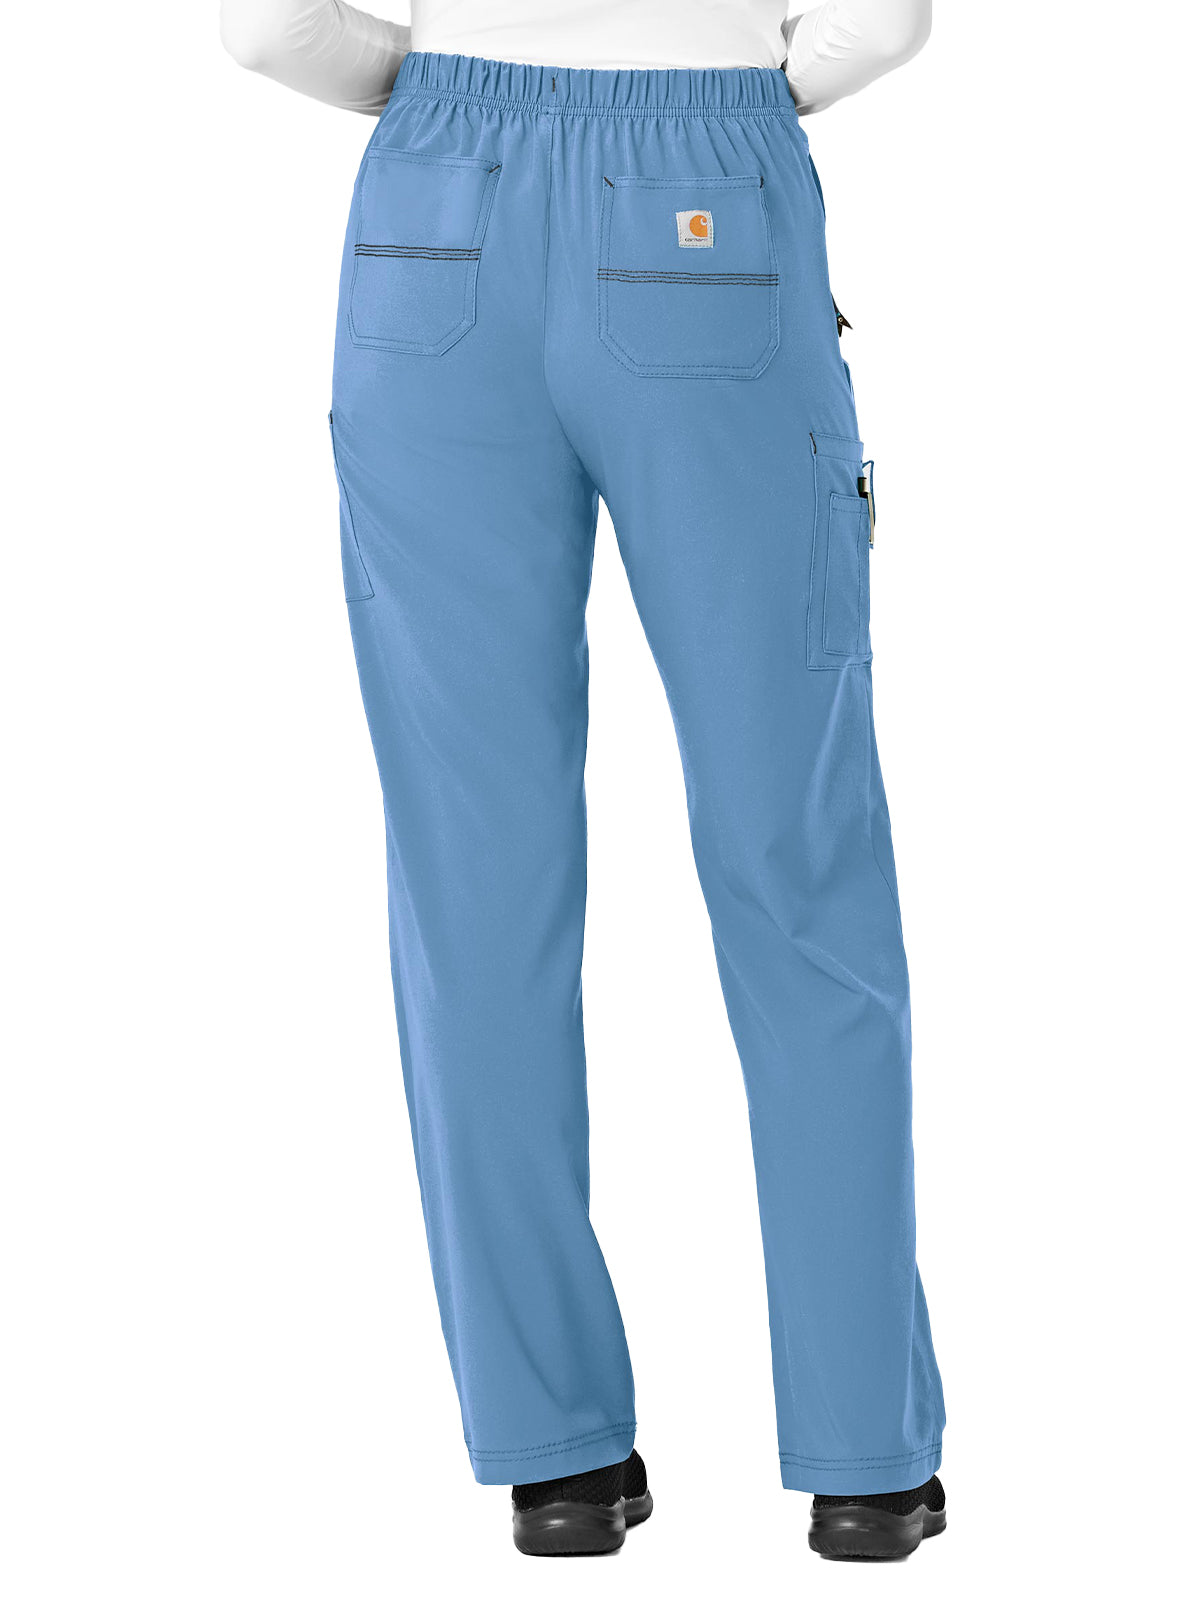 Women's Utility Boot Cut Pant - C52110 - Azure Blue